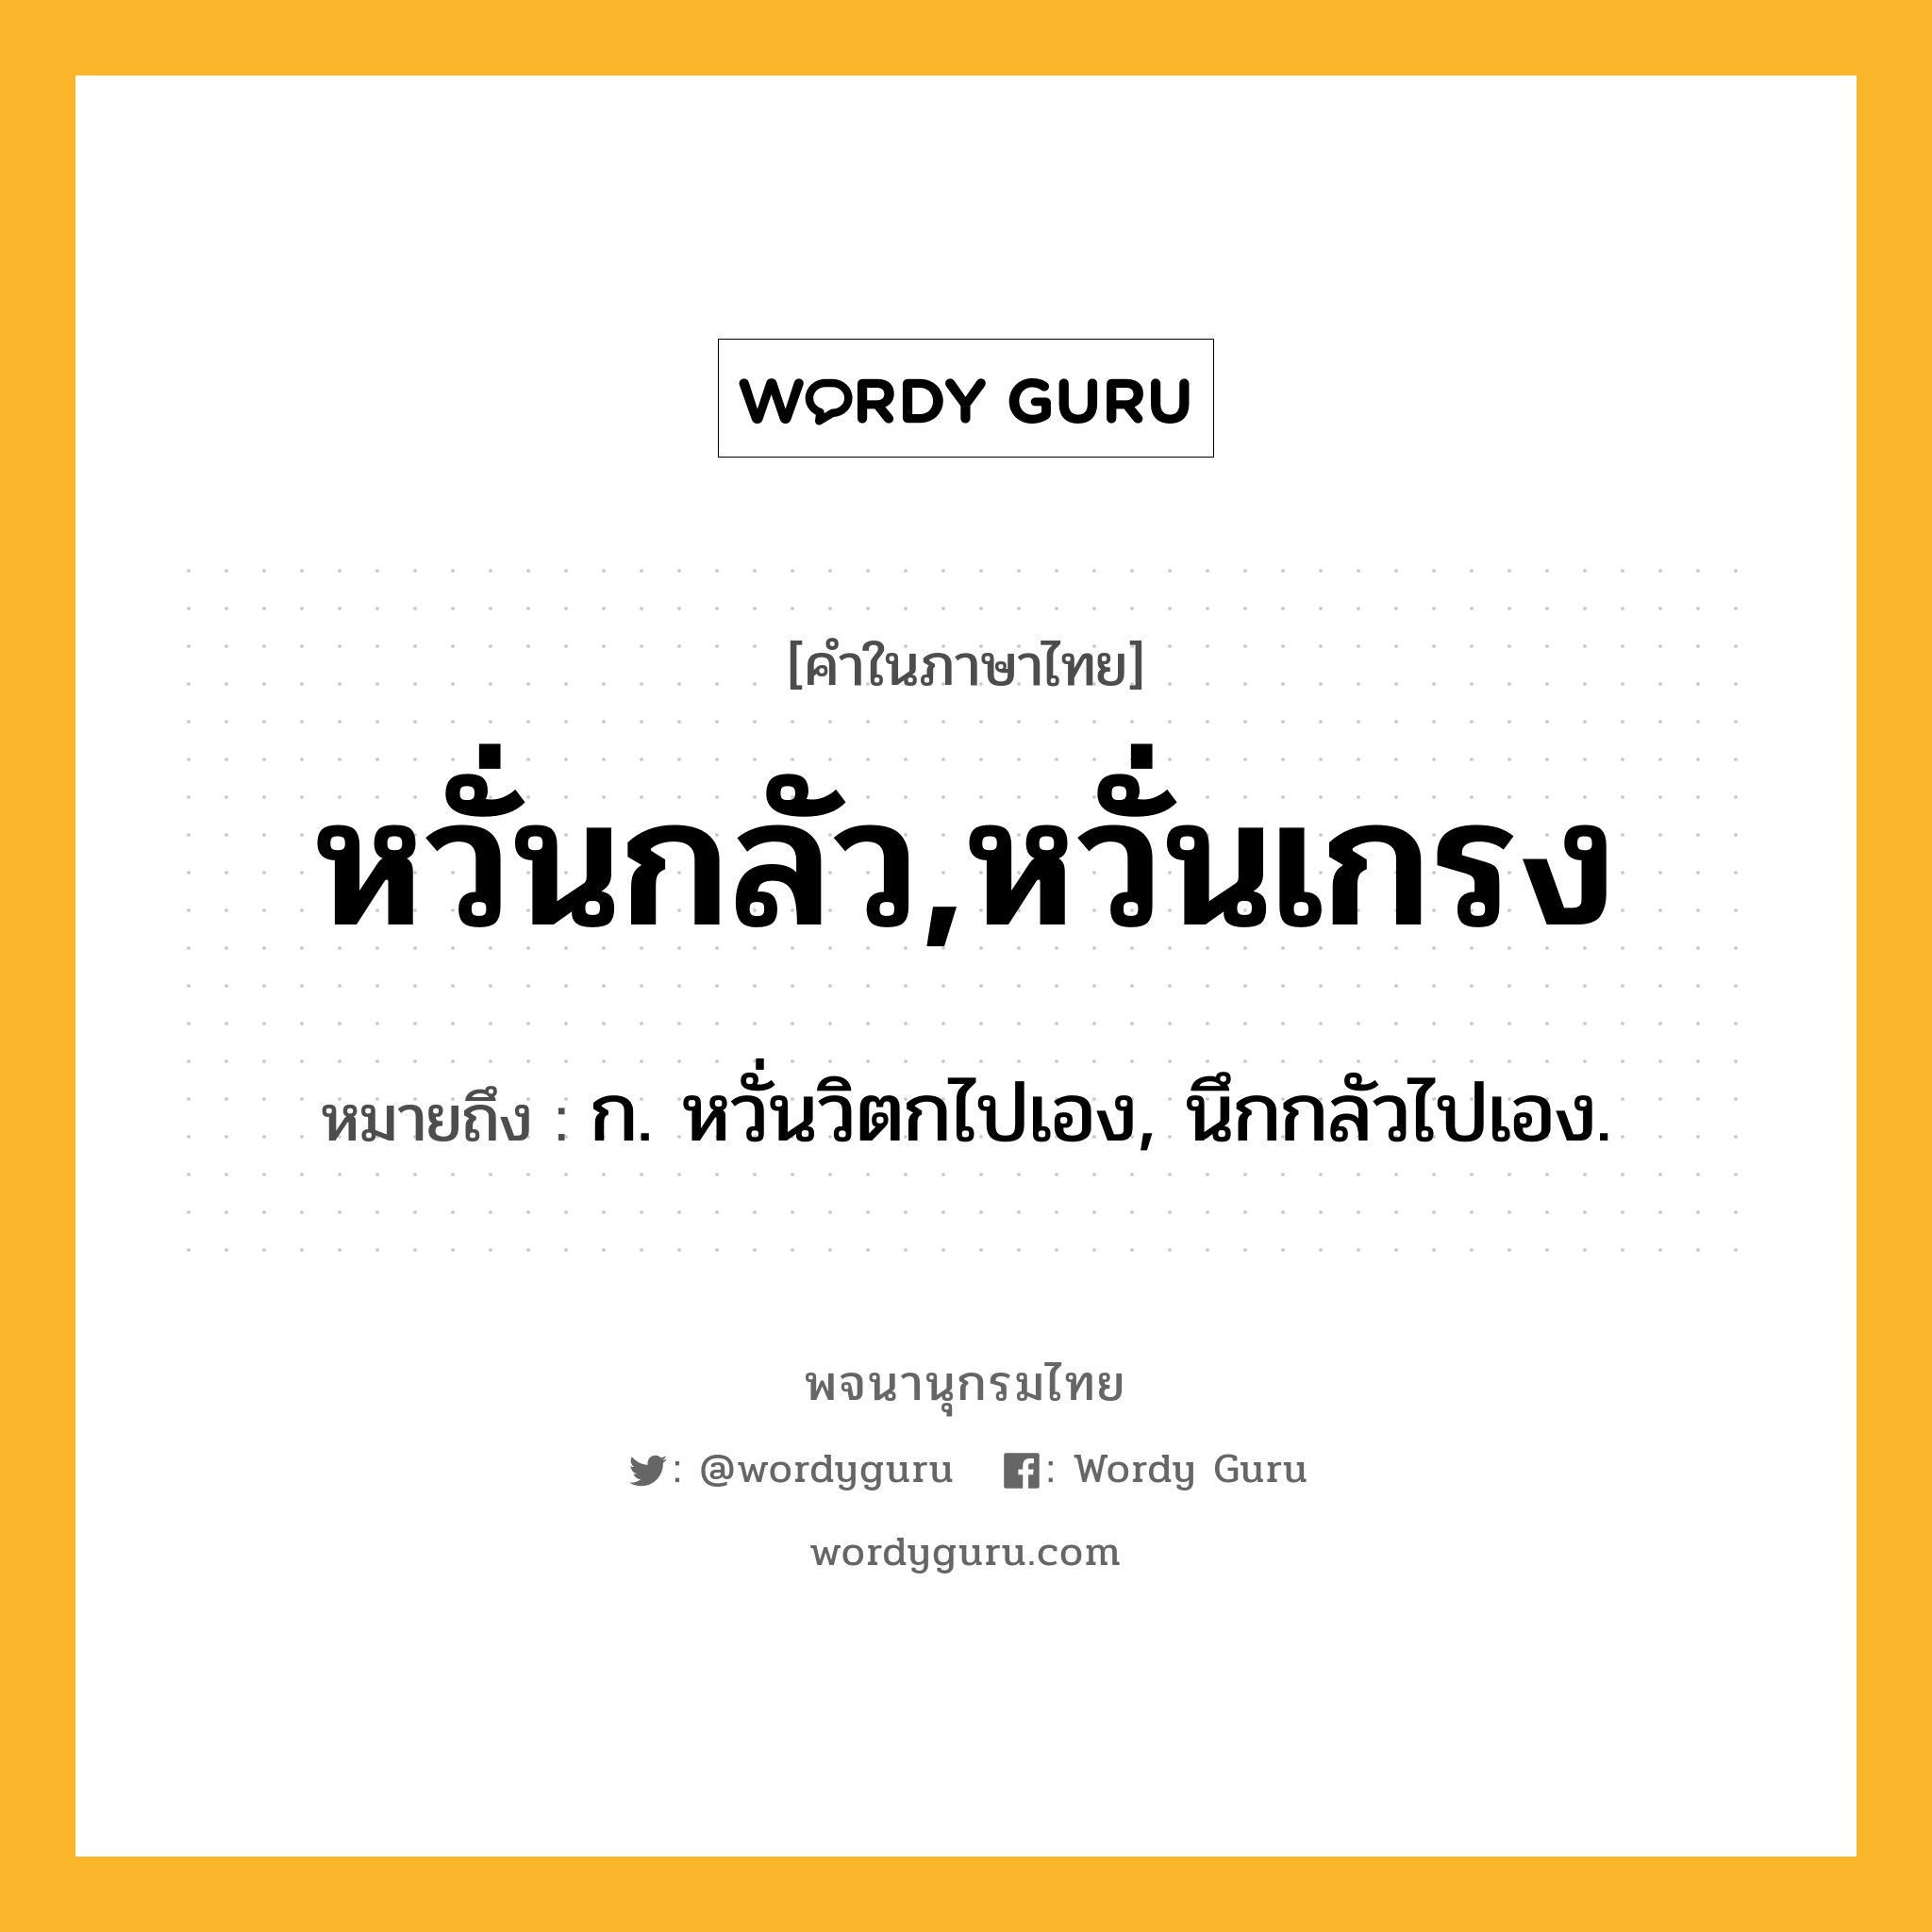 หวั่นกลัว,หวั่นเกรง หมายถึงอะไร?, คำในภาษาไทย หวั่นกลัว,หวั่นเกรง หมายถึง ก. หวั่นวิตกไปเอง, นึกกลัวไปเอง.